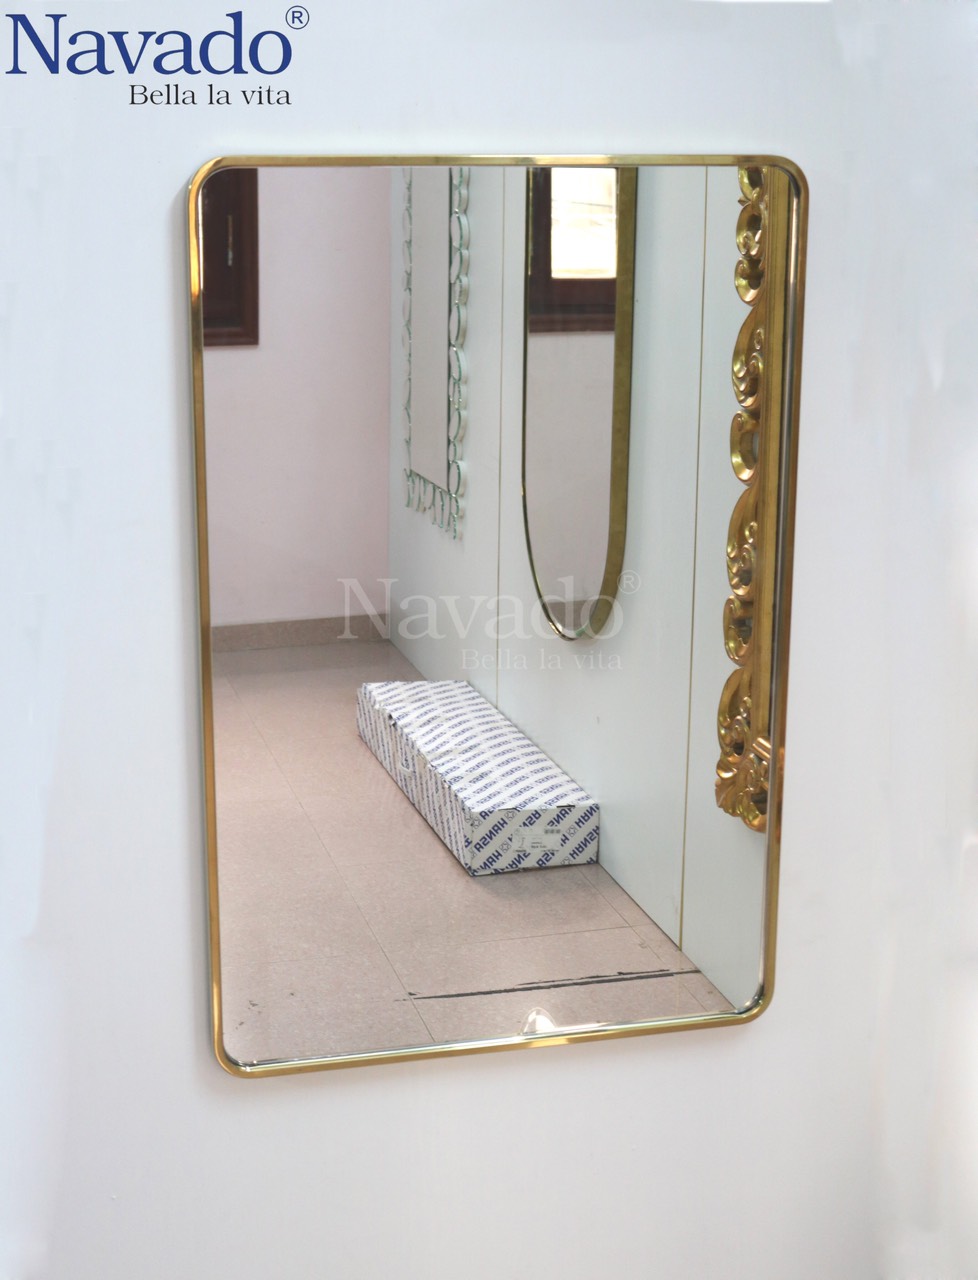 Gương phòng tắm khung inox vàng cao cấp: Với khung gương inox vàng cao cấp, không chỉ có thiết kế tối giản mà còn có vẻ ngoài sang trọng và lịch lãm. Khả năng chống gỉ sét và ảnh hưởng của nước, gương này sẽ tạo nên một không gian tắm đẳng cấp trong nhà bạn.